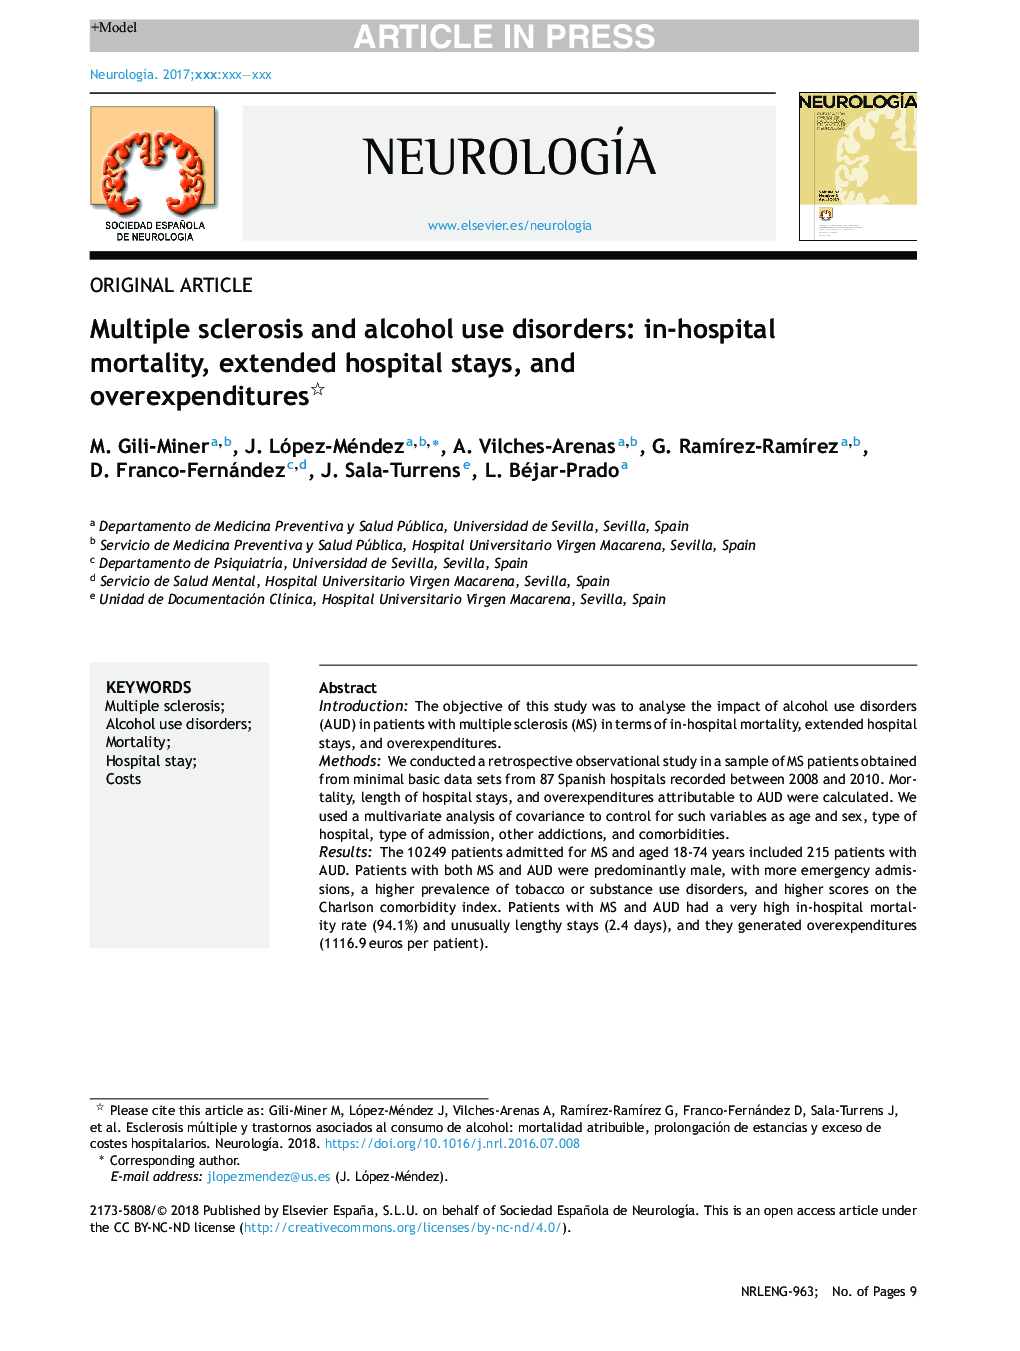 بیماری های مولتیپل اسکلروزیس و مصرف الکل: مرگ و میر در بیمارستان، بیمارستان طولانی مدت و هزینه های اضافی 